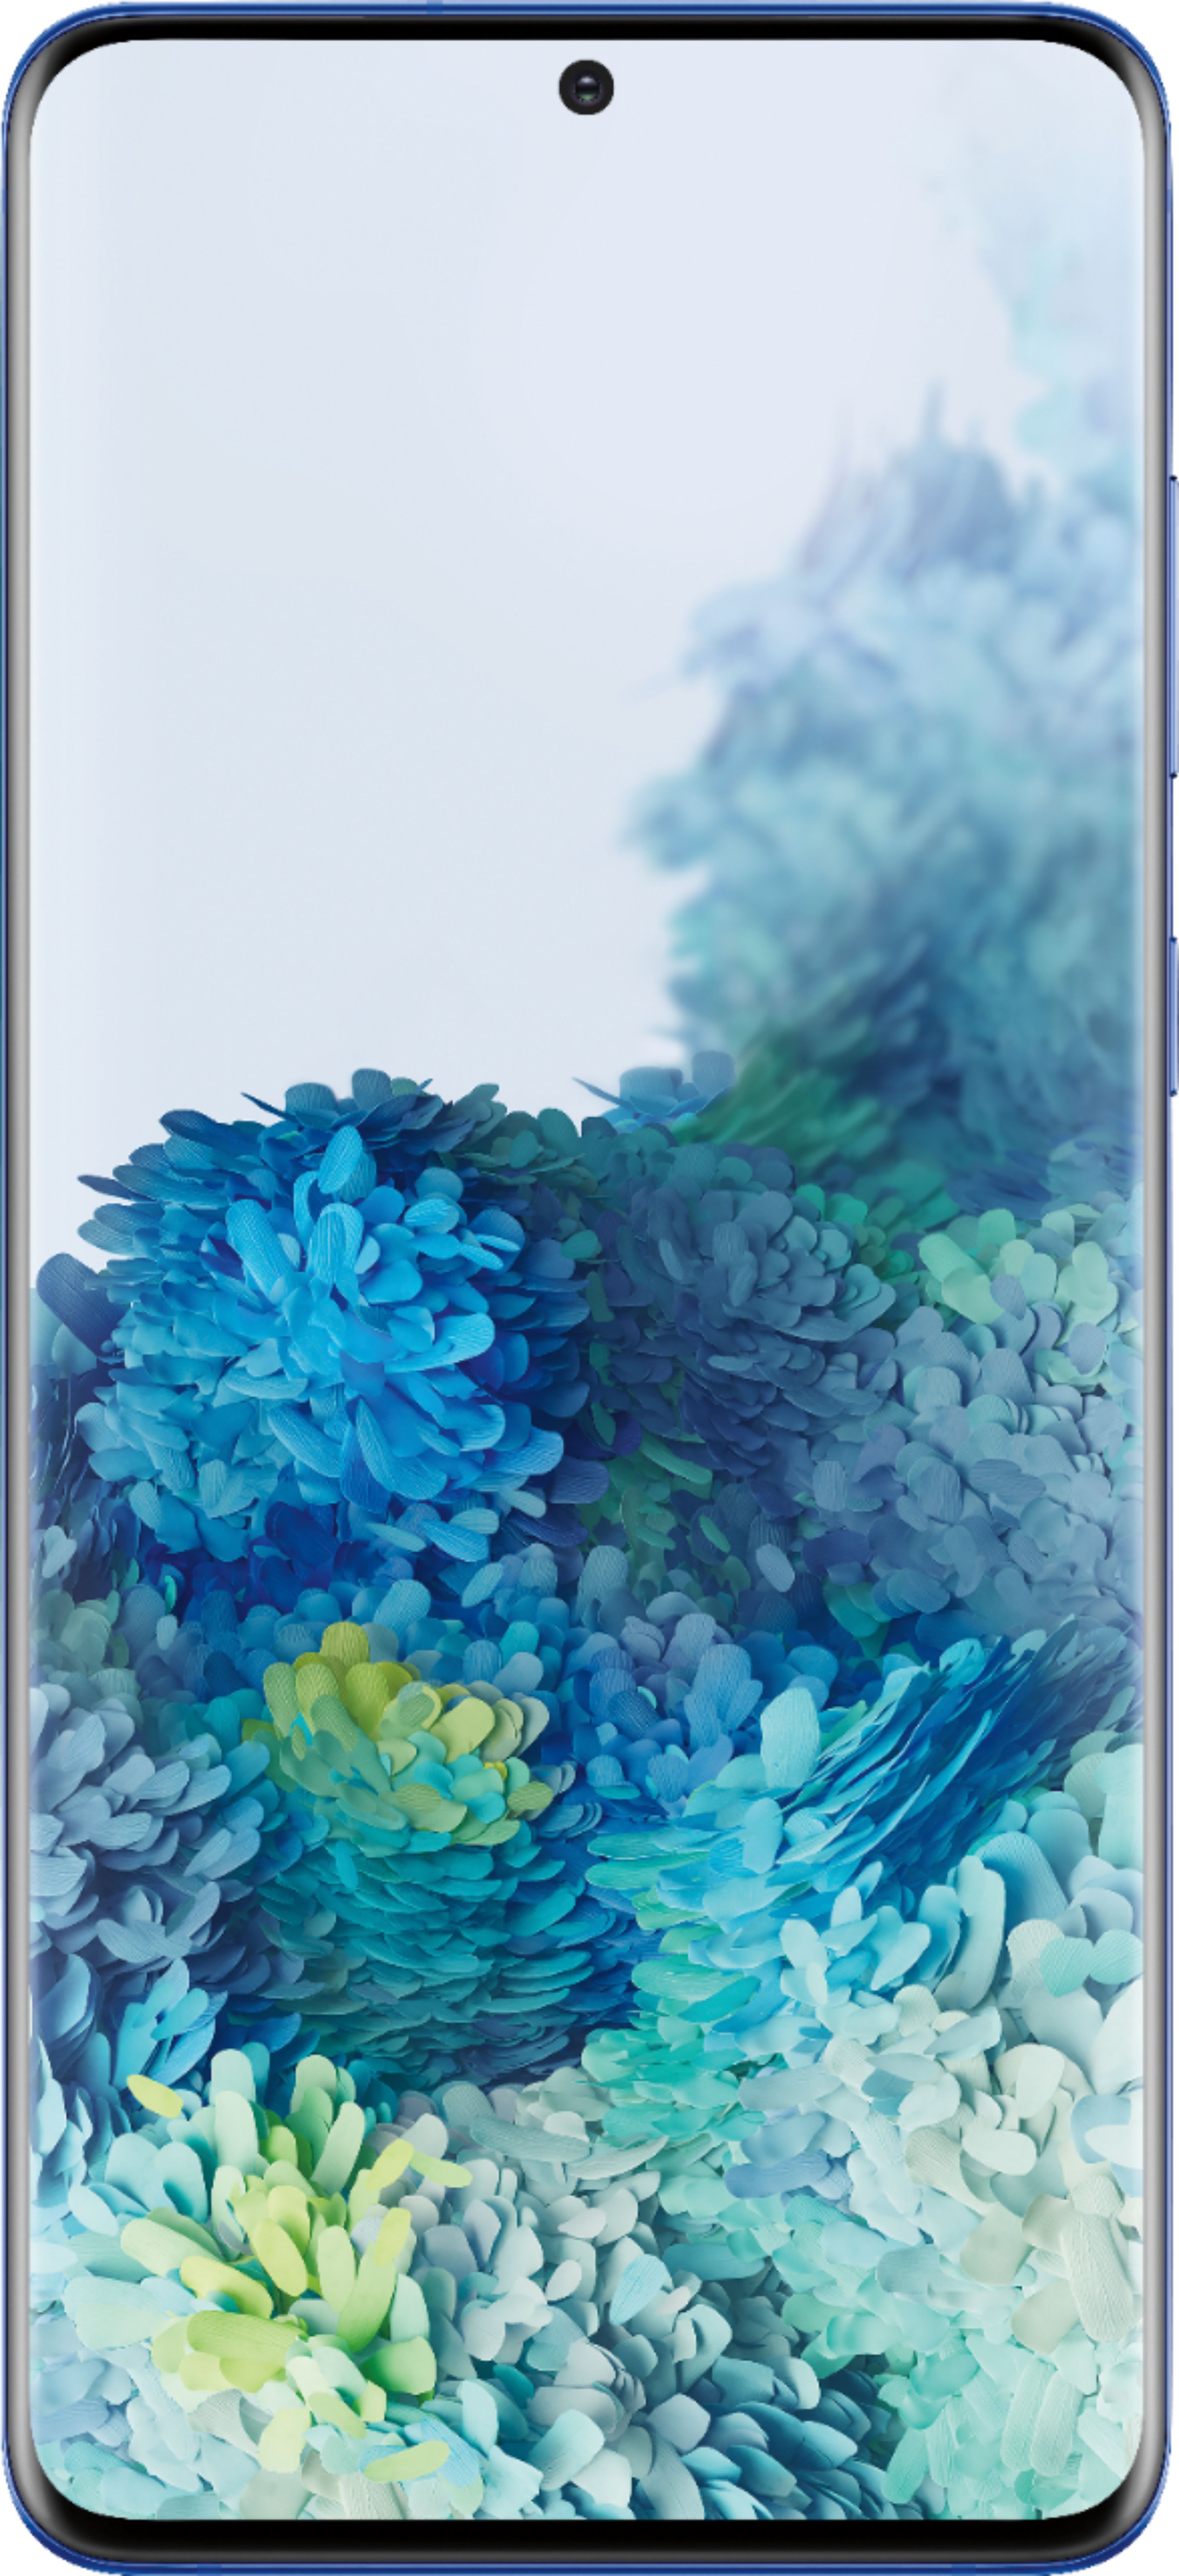 Samsung - Galaxy S20+ 5G Enabled 128GB (Unlocked) - Aura Blue